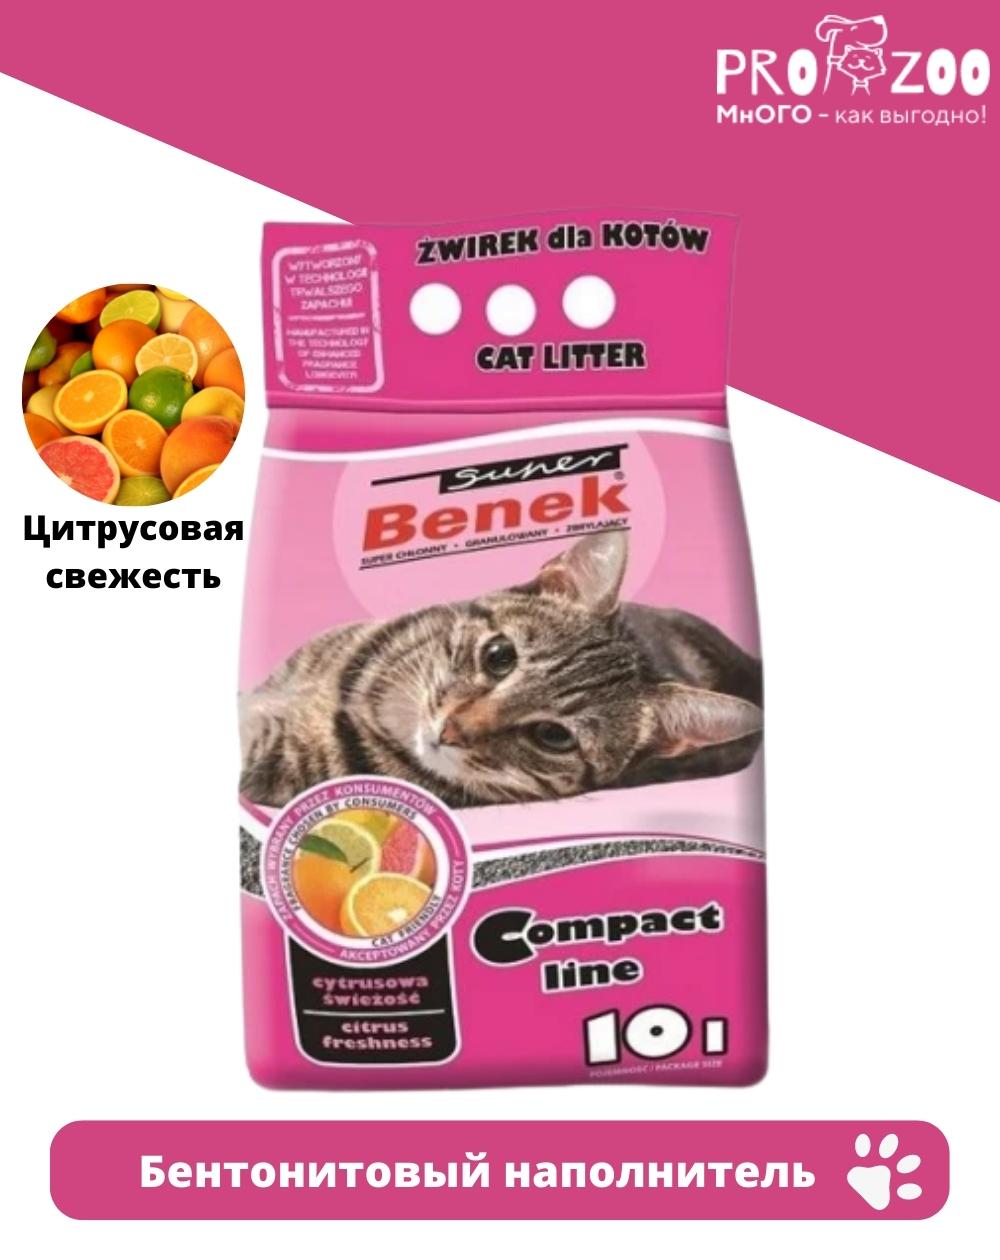 предпросмотр Наполнитель Super Benek для туалета для кошек, компакт, цитрусовая свежесть, 8 кг 1